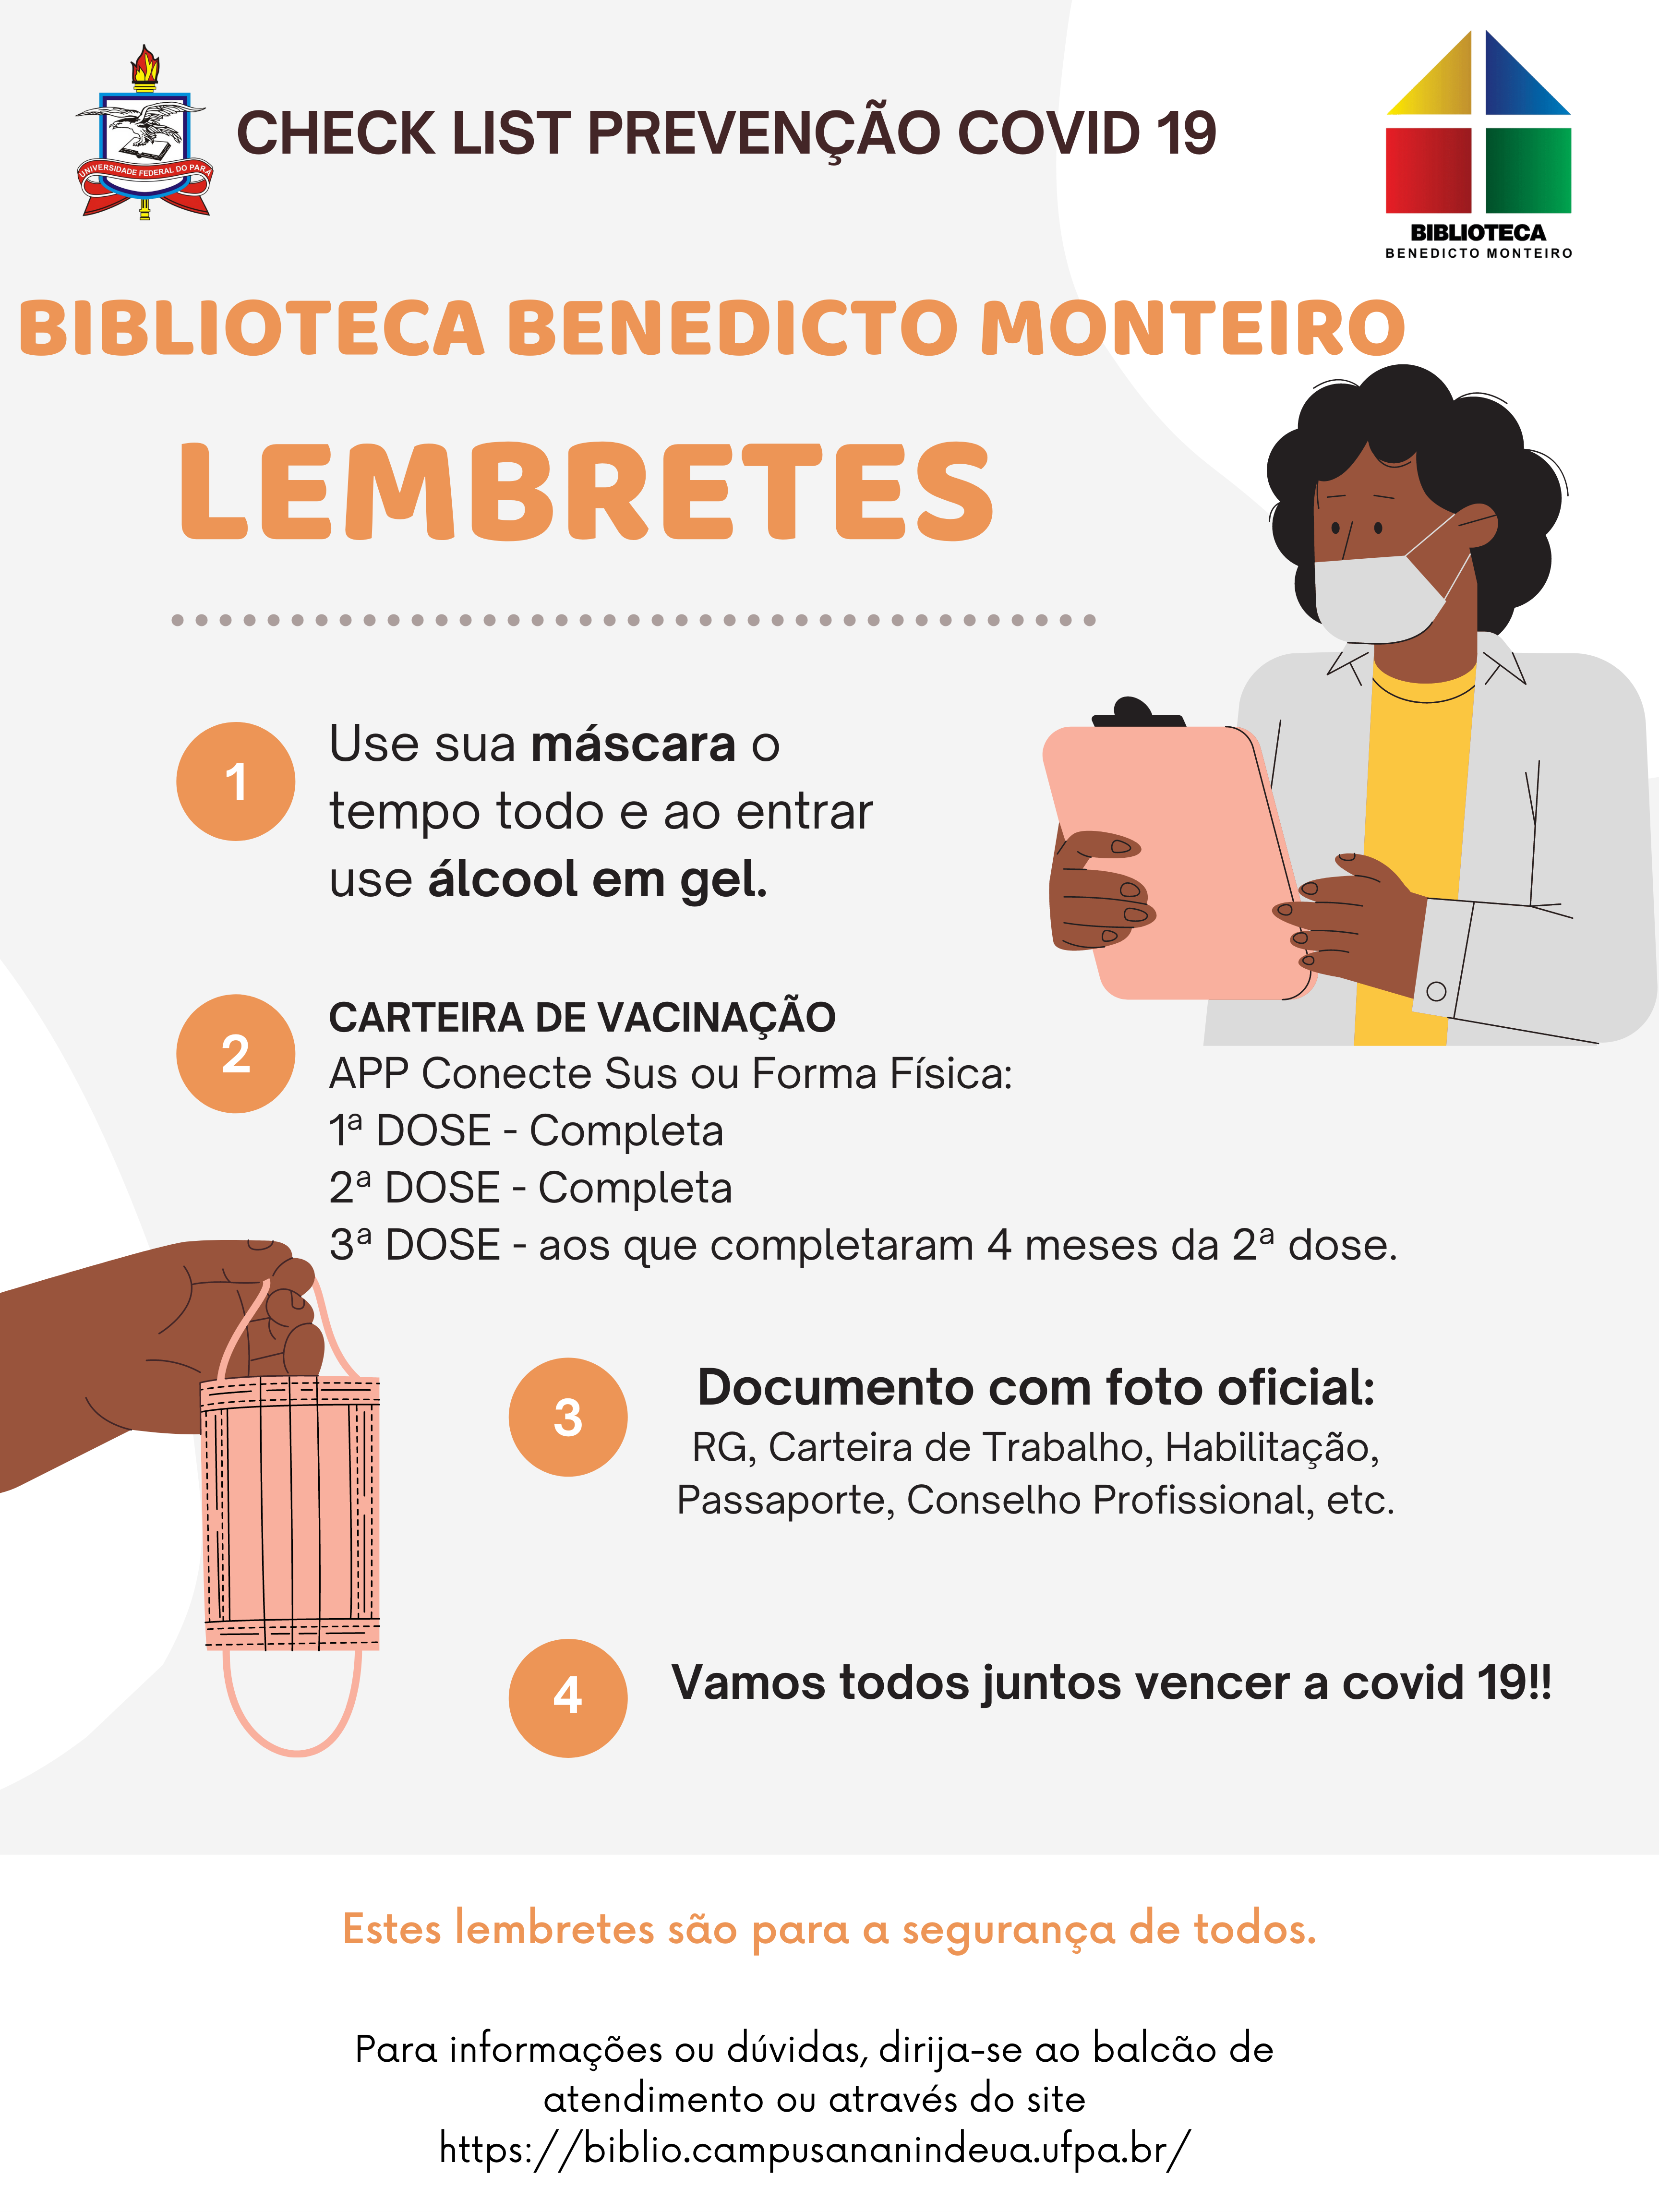 Biblioteca Benedicto Monteiro na prevenção contra a COVID-19